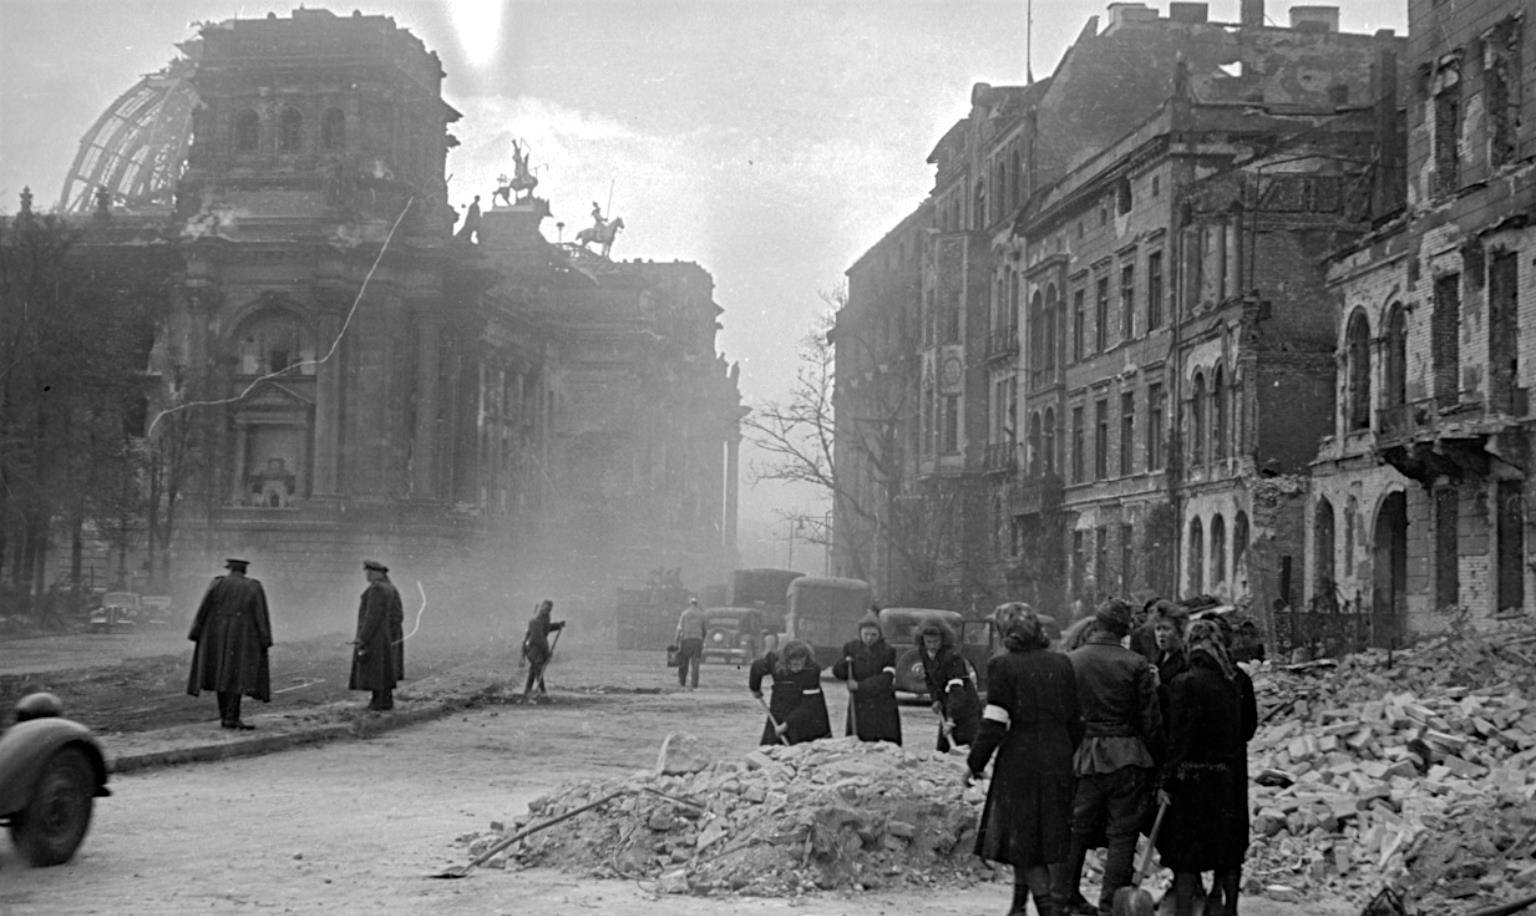 “丘吉尔”德国投降后丘吉尔视察柏林的场景：满目疮痍，丘吉尔摆出胜利手势